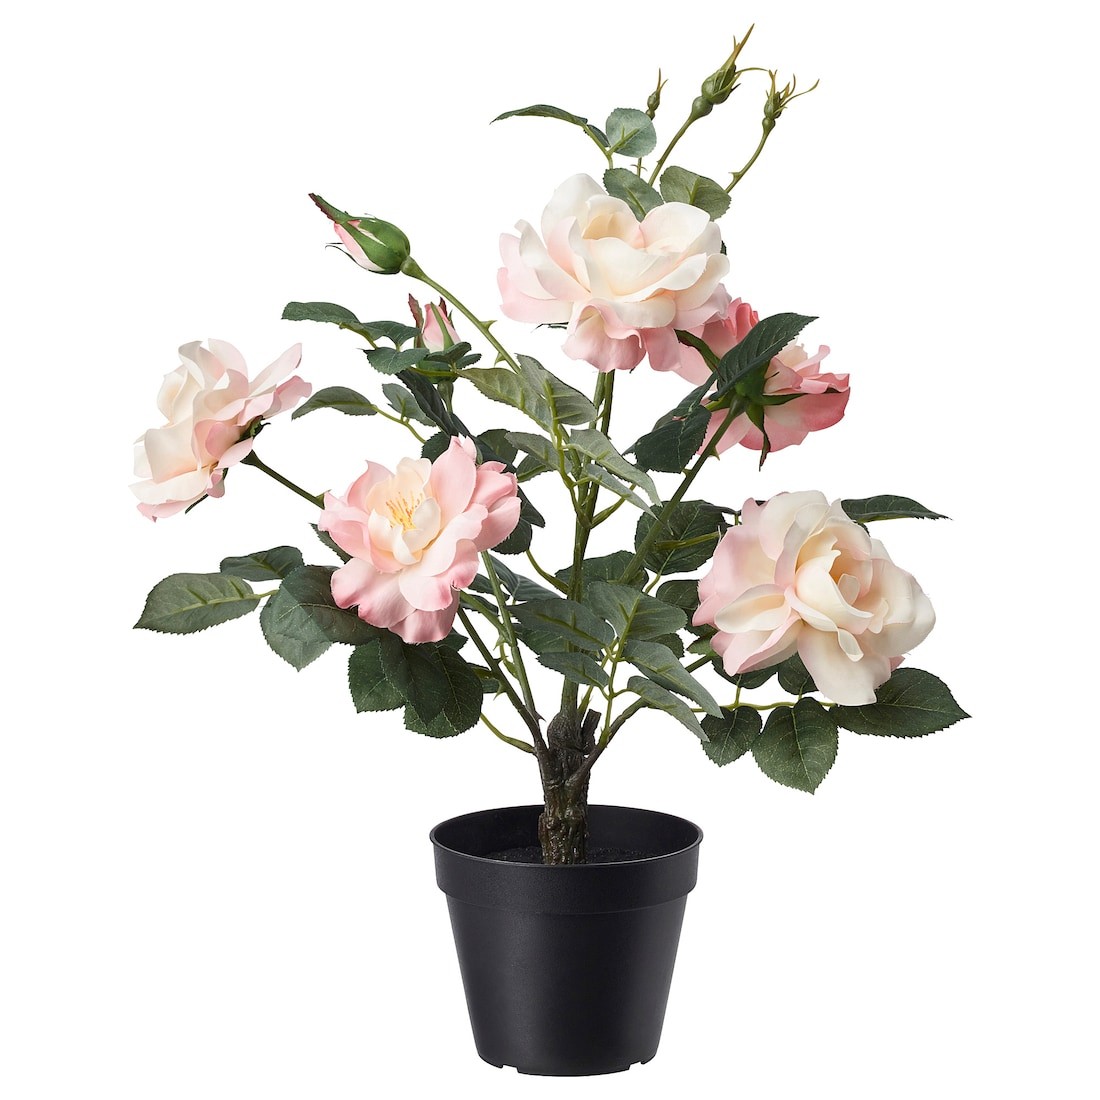 IKEA FEJKA ФЕЙКА Искусственное растение в горшке, для дома / улицы / Роза розовый, 12 см 90532773 905.327.73